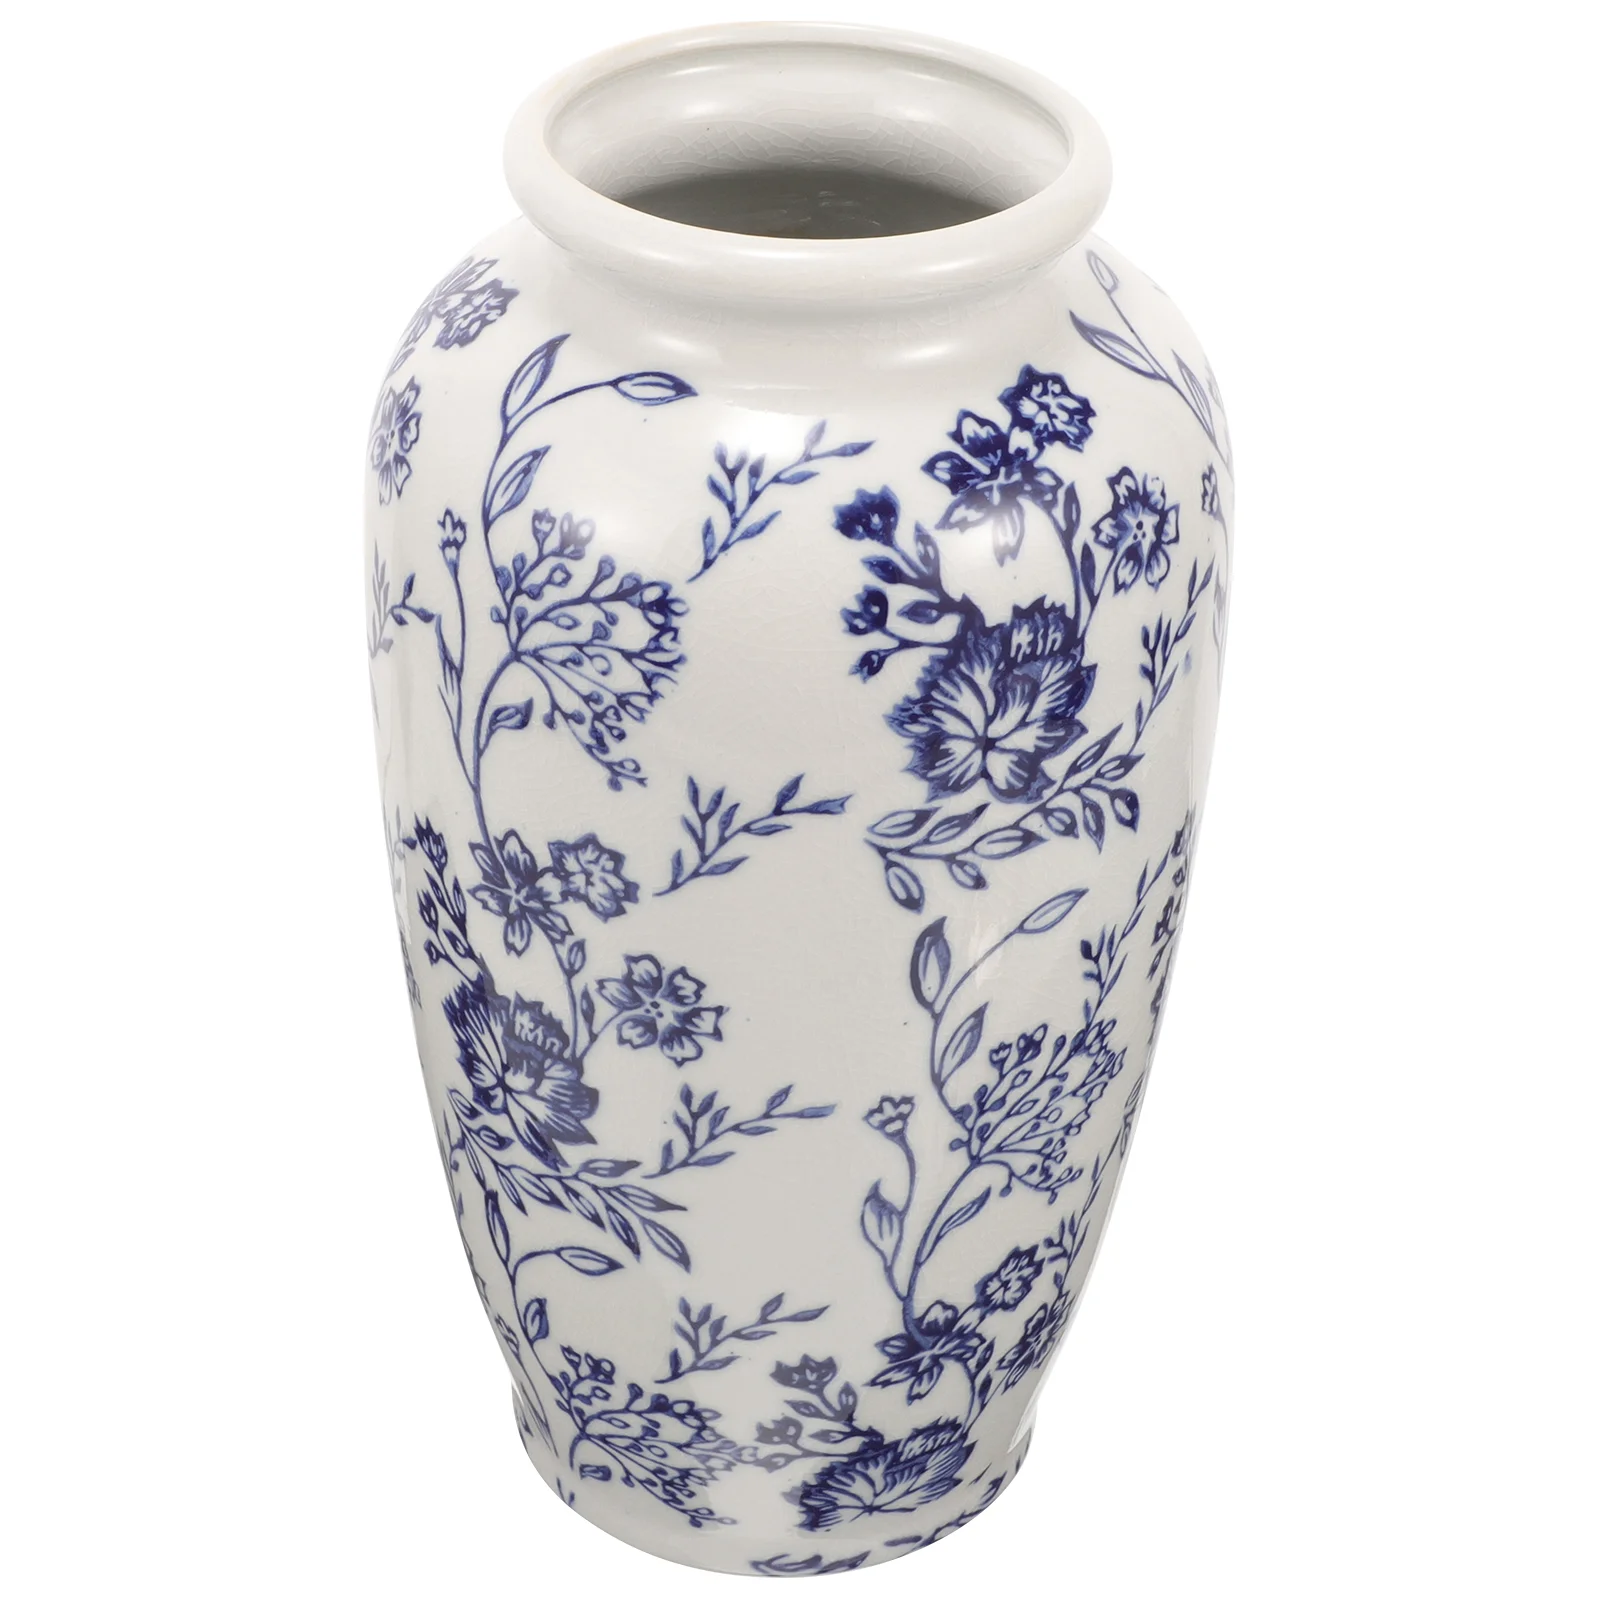 

Flower Pots Blue White Porcelain Vase Ceramic Medium Arrangement Desktop Home Decorations Dried